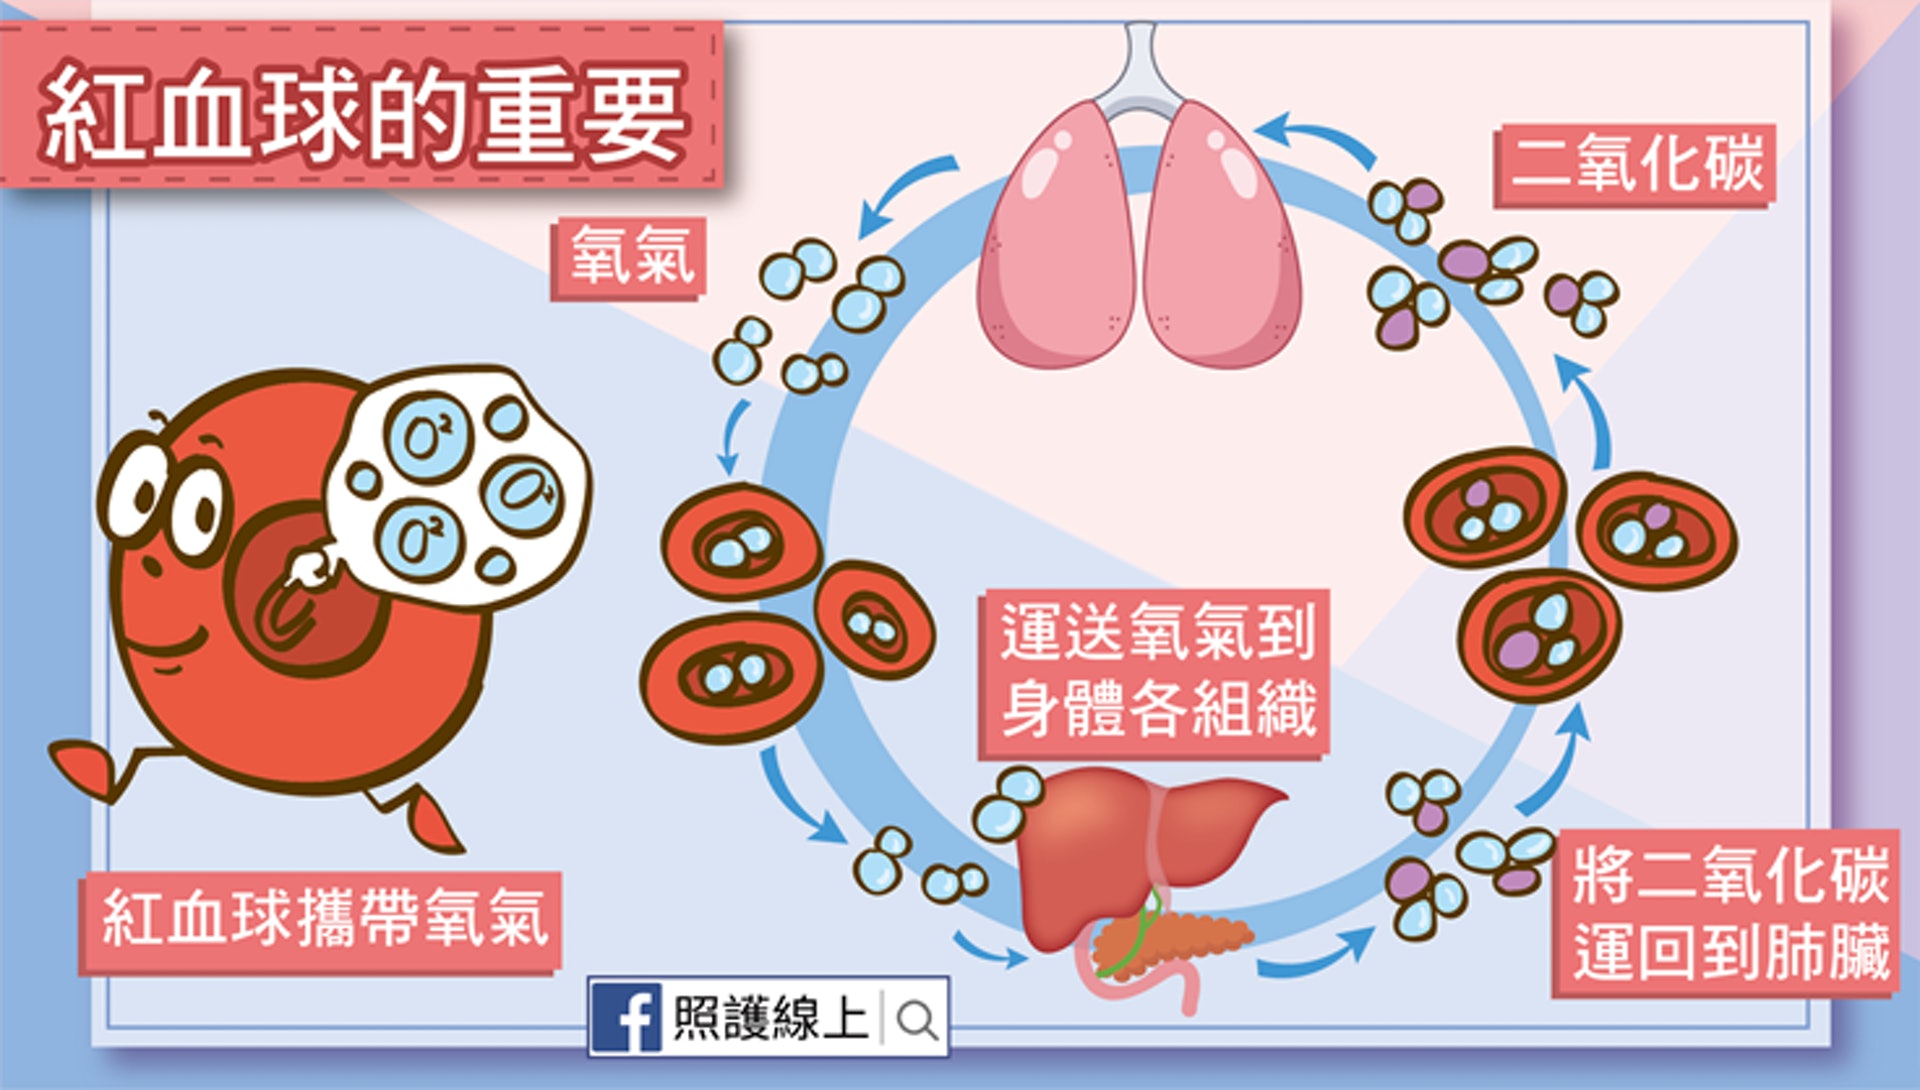 血紅素能運送氧氣到各個器官組織，並將組織的二氧化碳運回到肺臟，所以紅血球可是非常重要的啊！（照護線上授權使用）